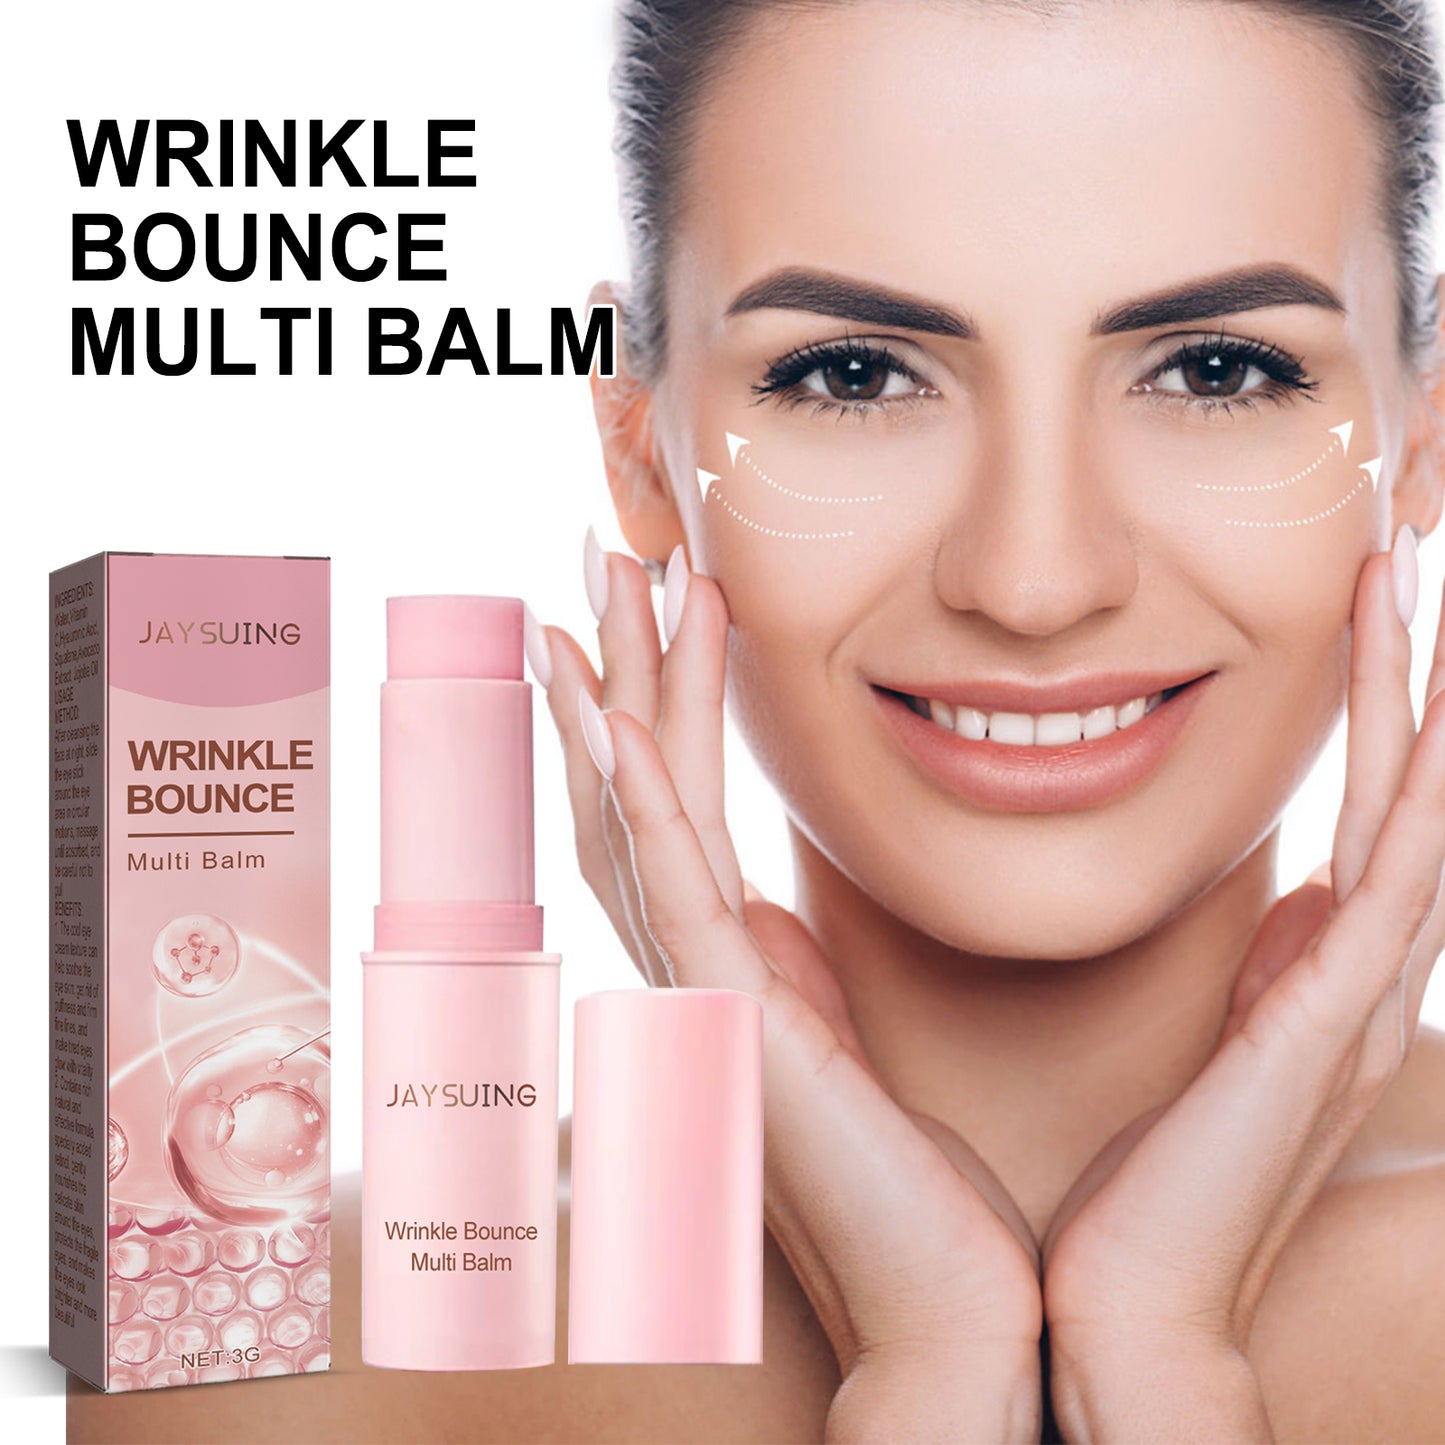 Anti-Wrinkle Moisturizing Cream